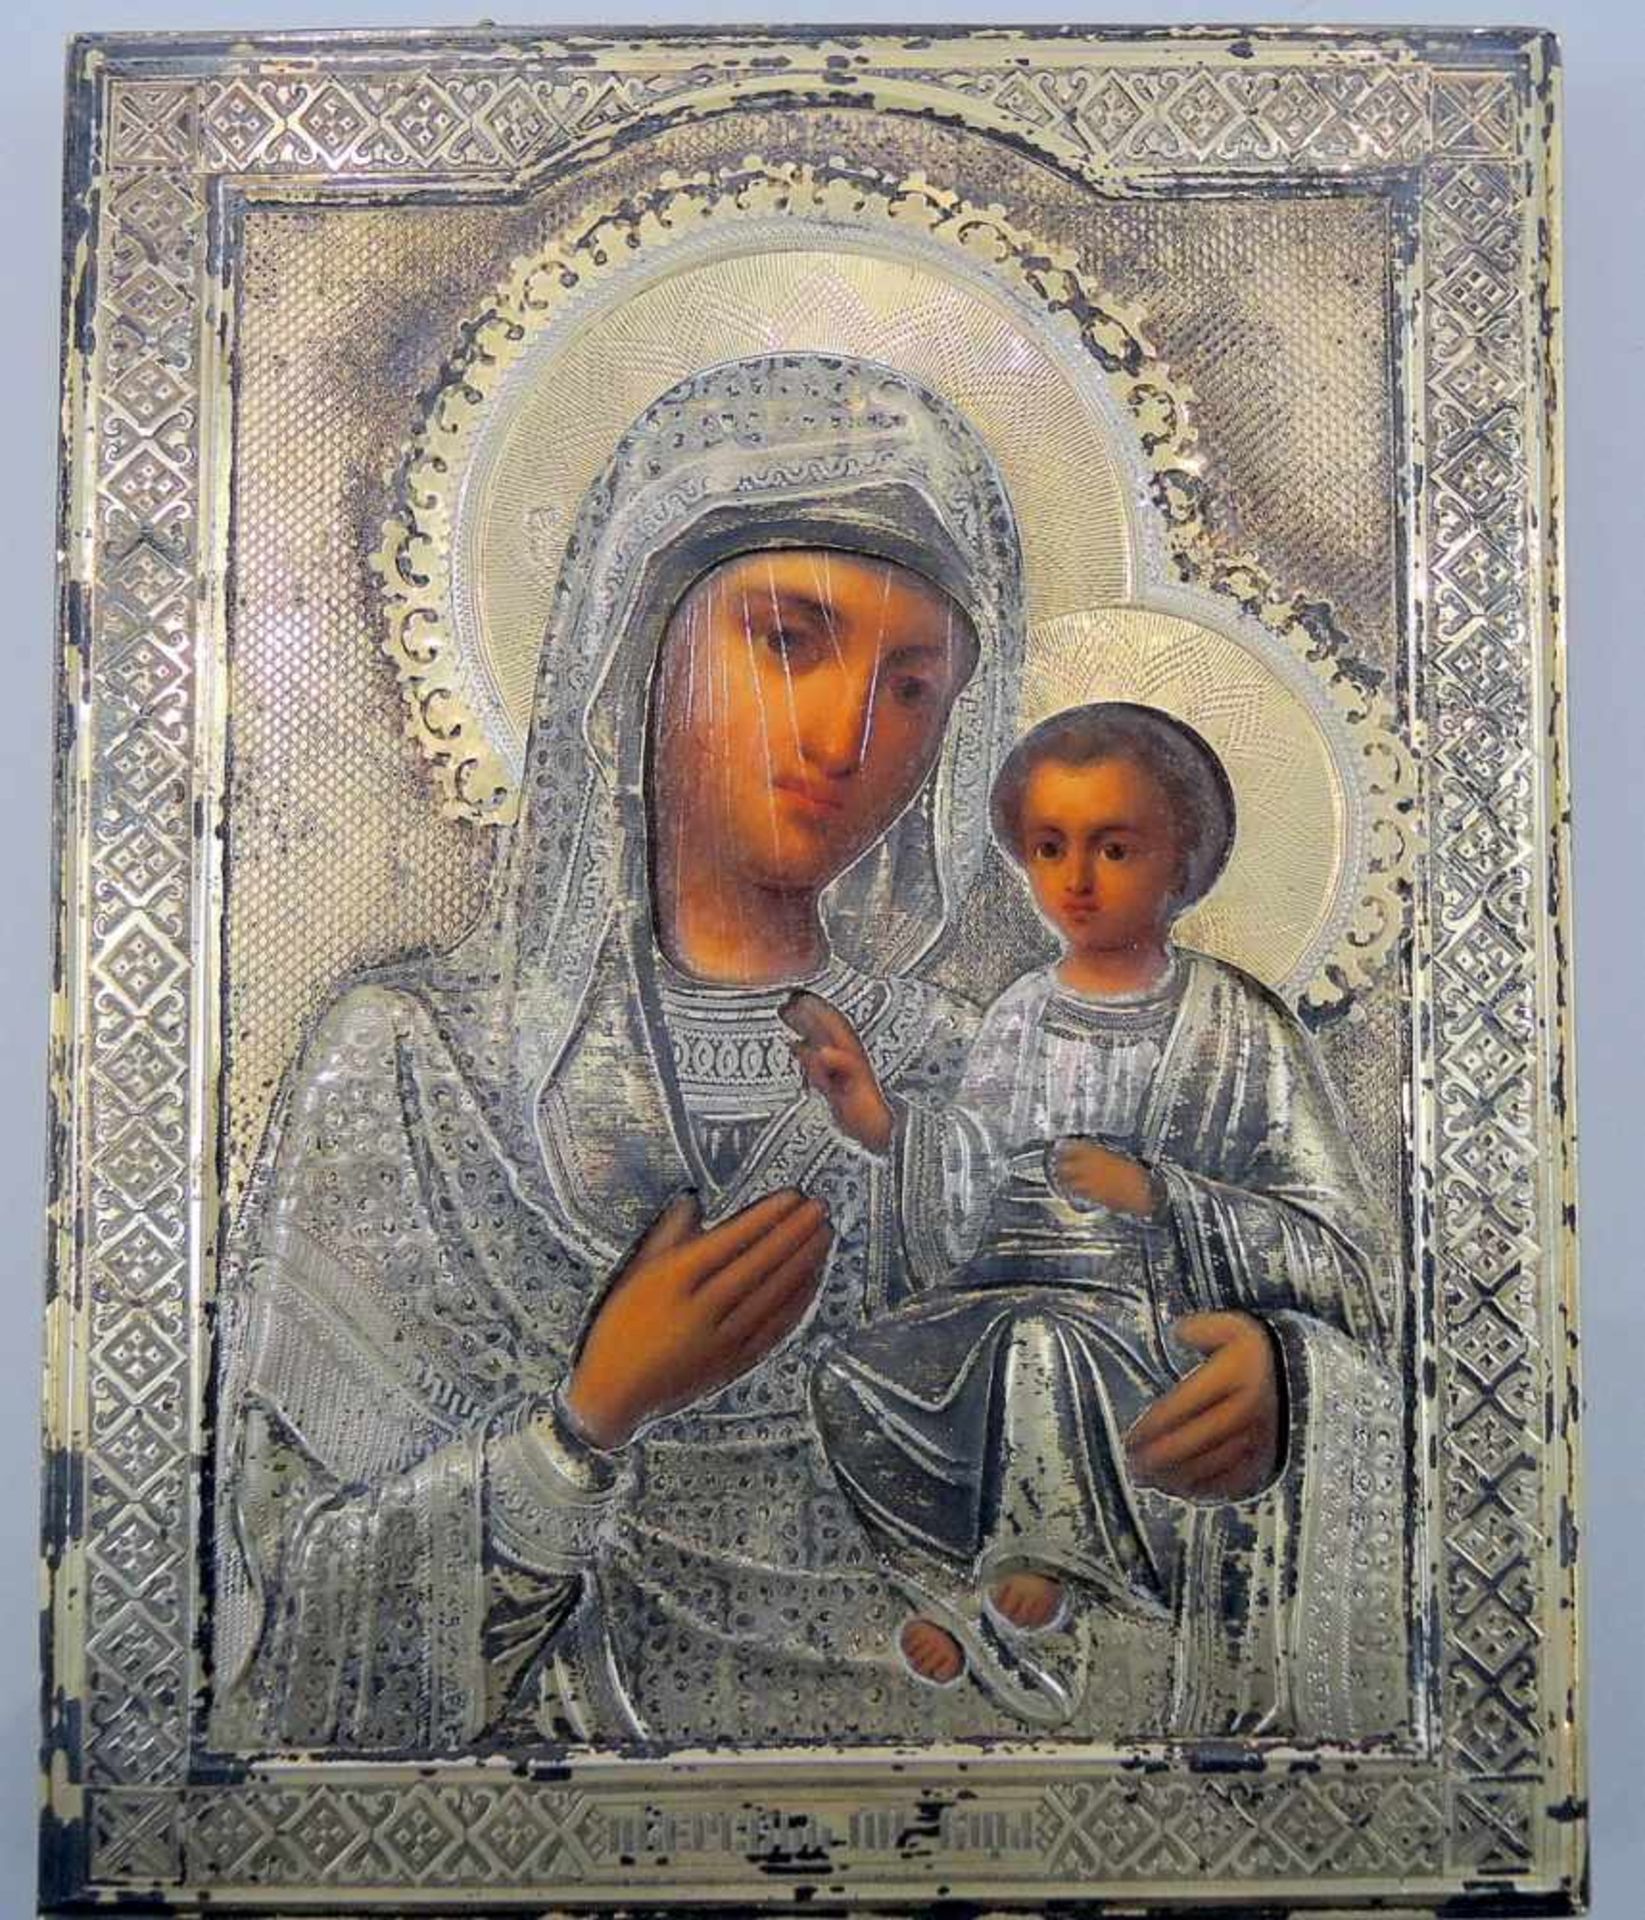 Russische Ikone Madonna mit Kind Messing. Oklad-Ikone, Iwerskaja. Auf Holz handbemalt, mit